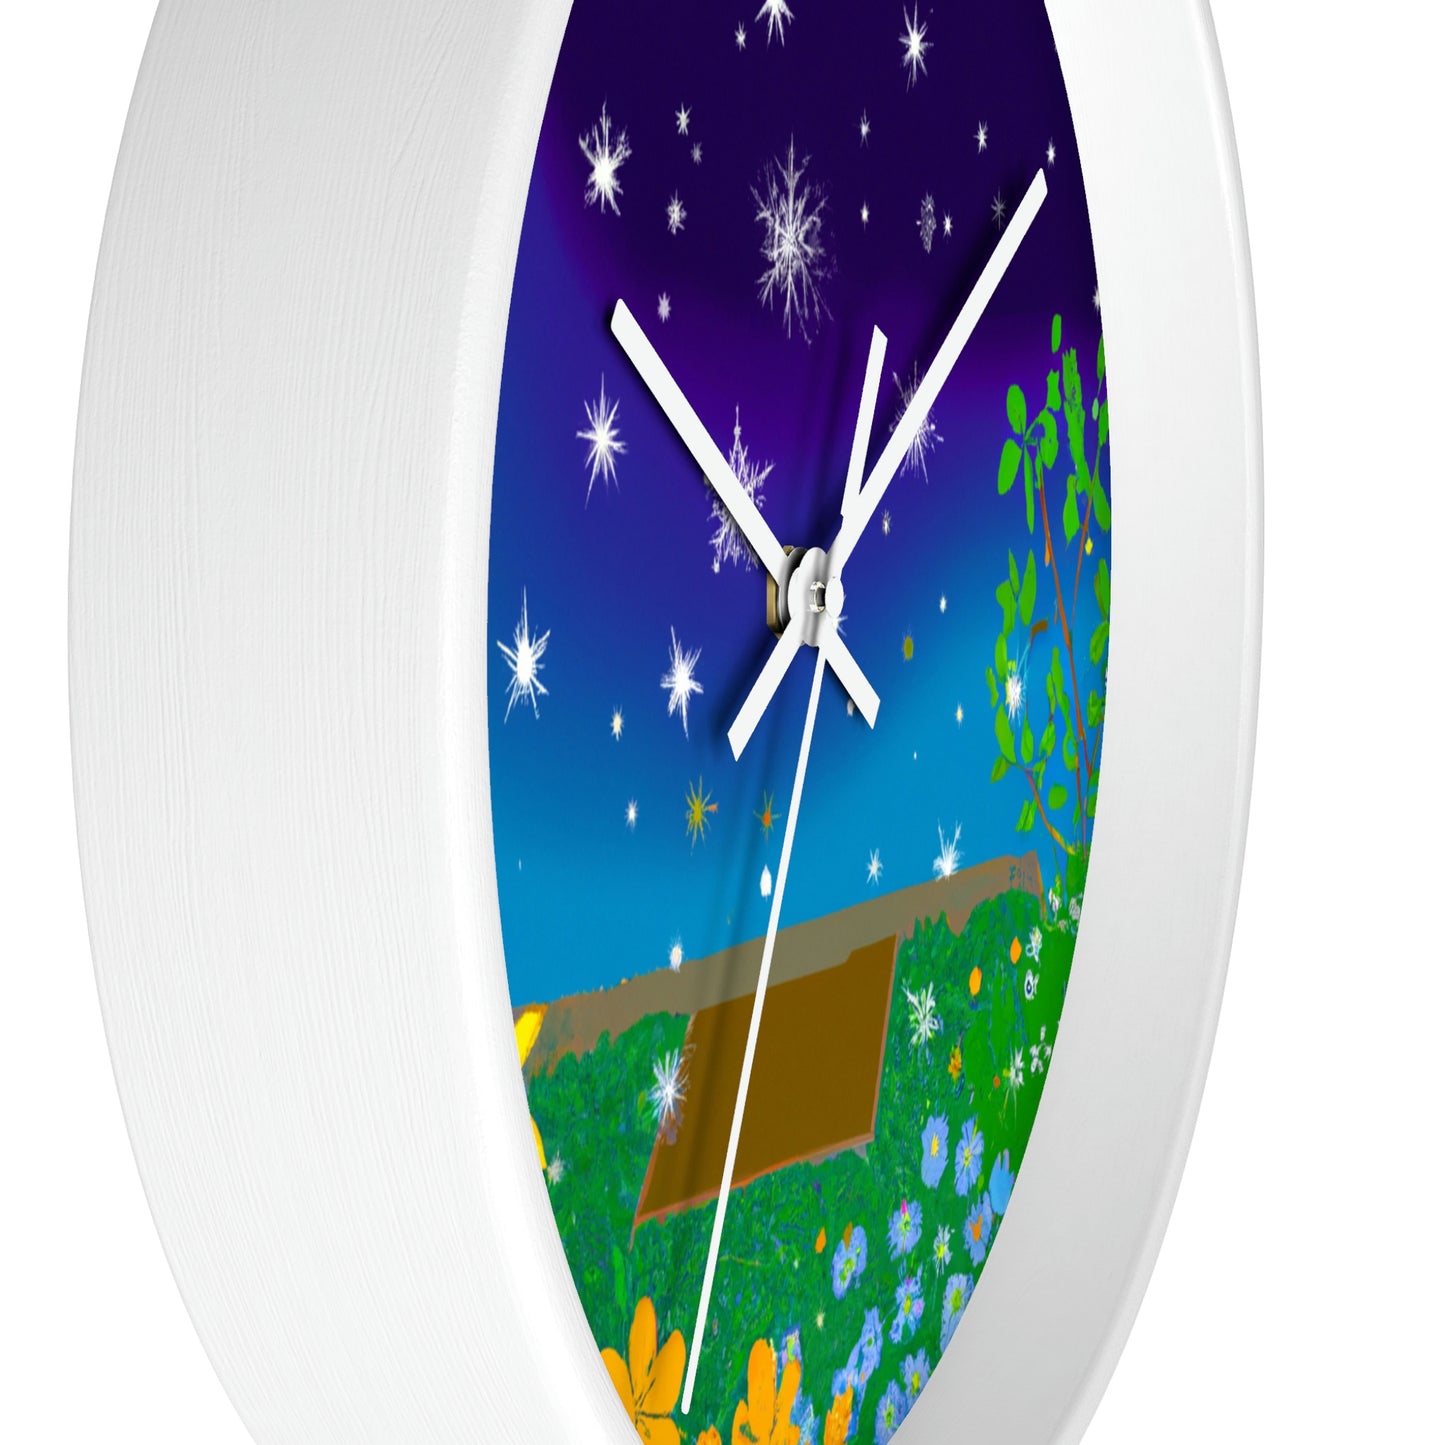 "A Celestial Garden of Color" - The Alien Wall Clock